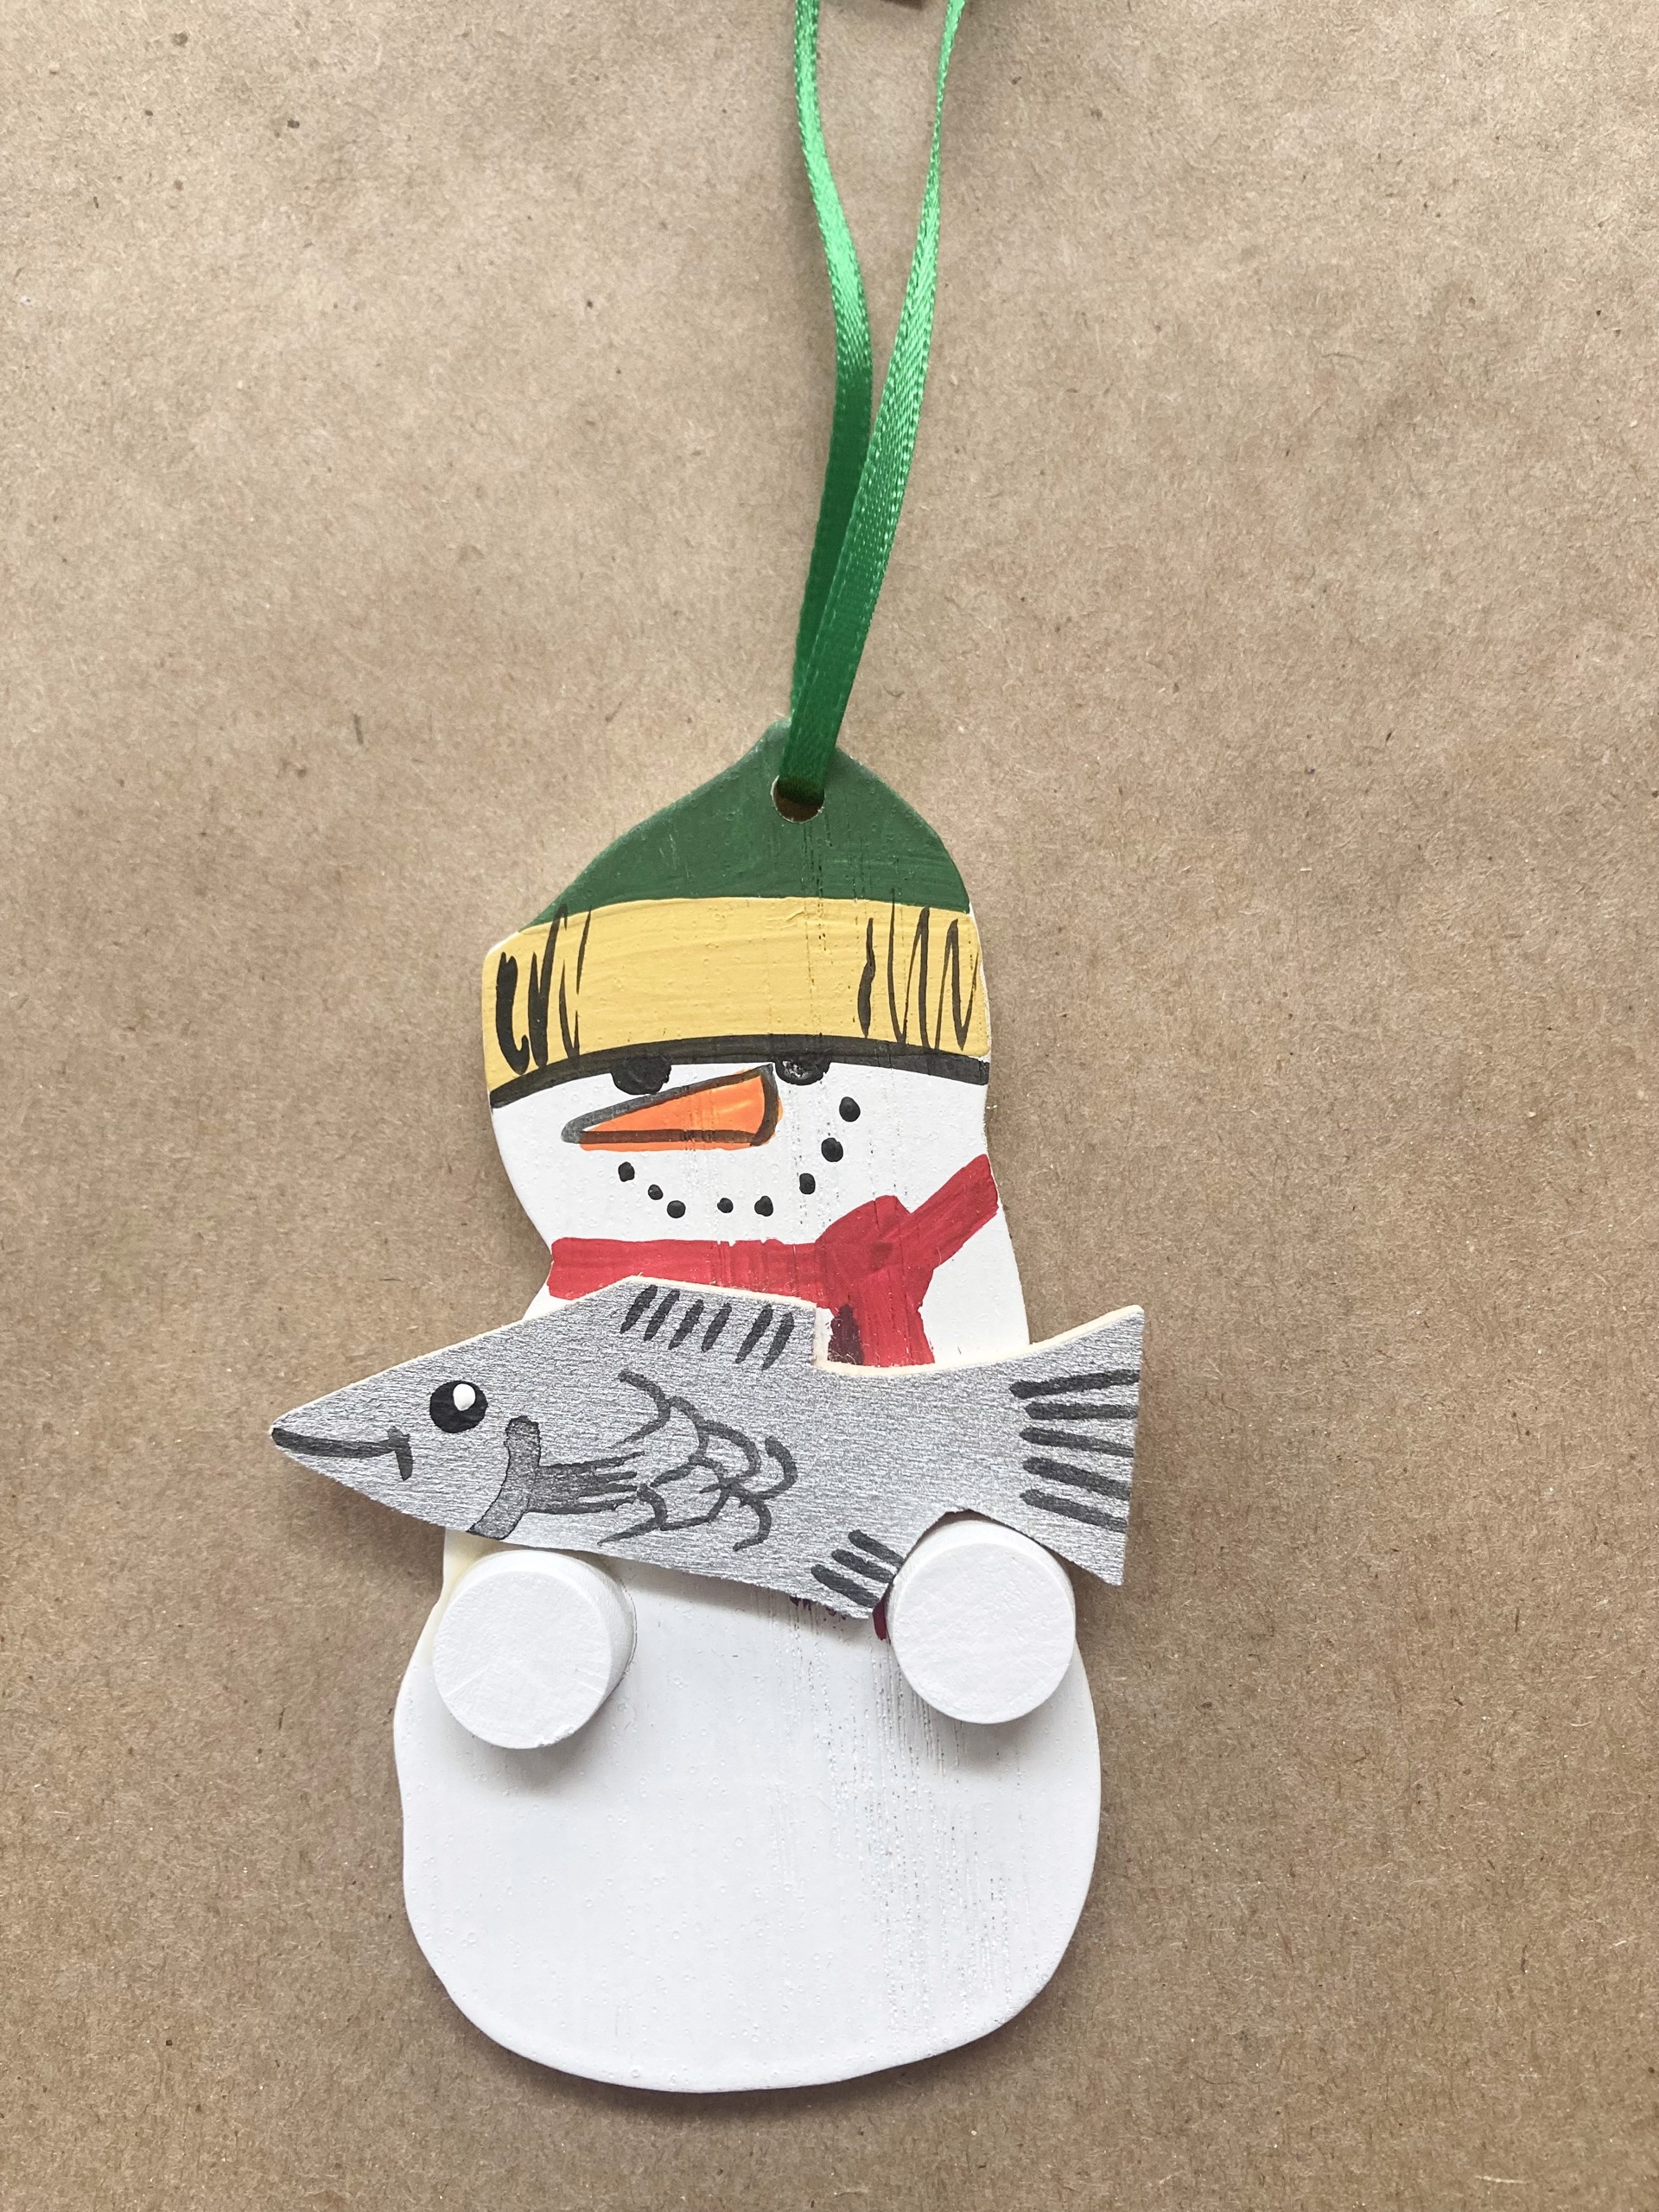 Snowman Ornament by Dan Wieske